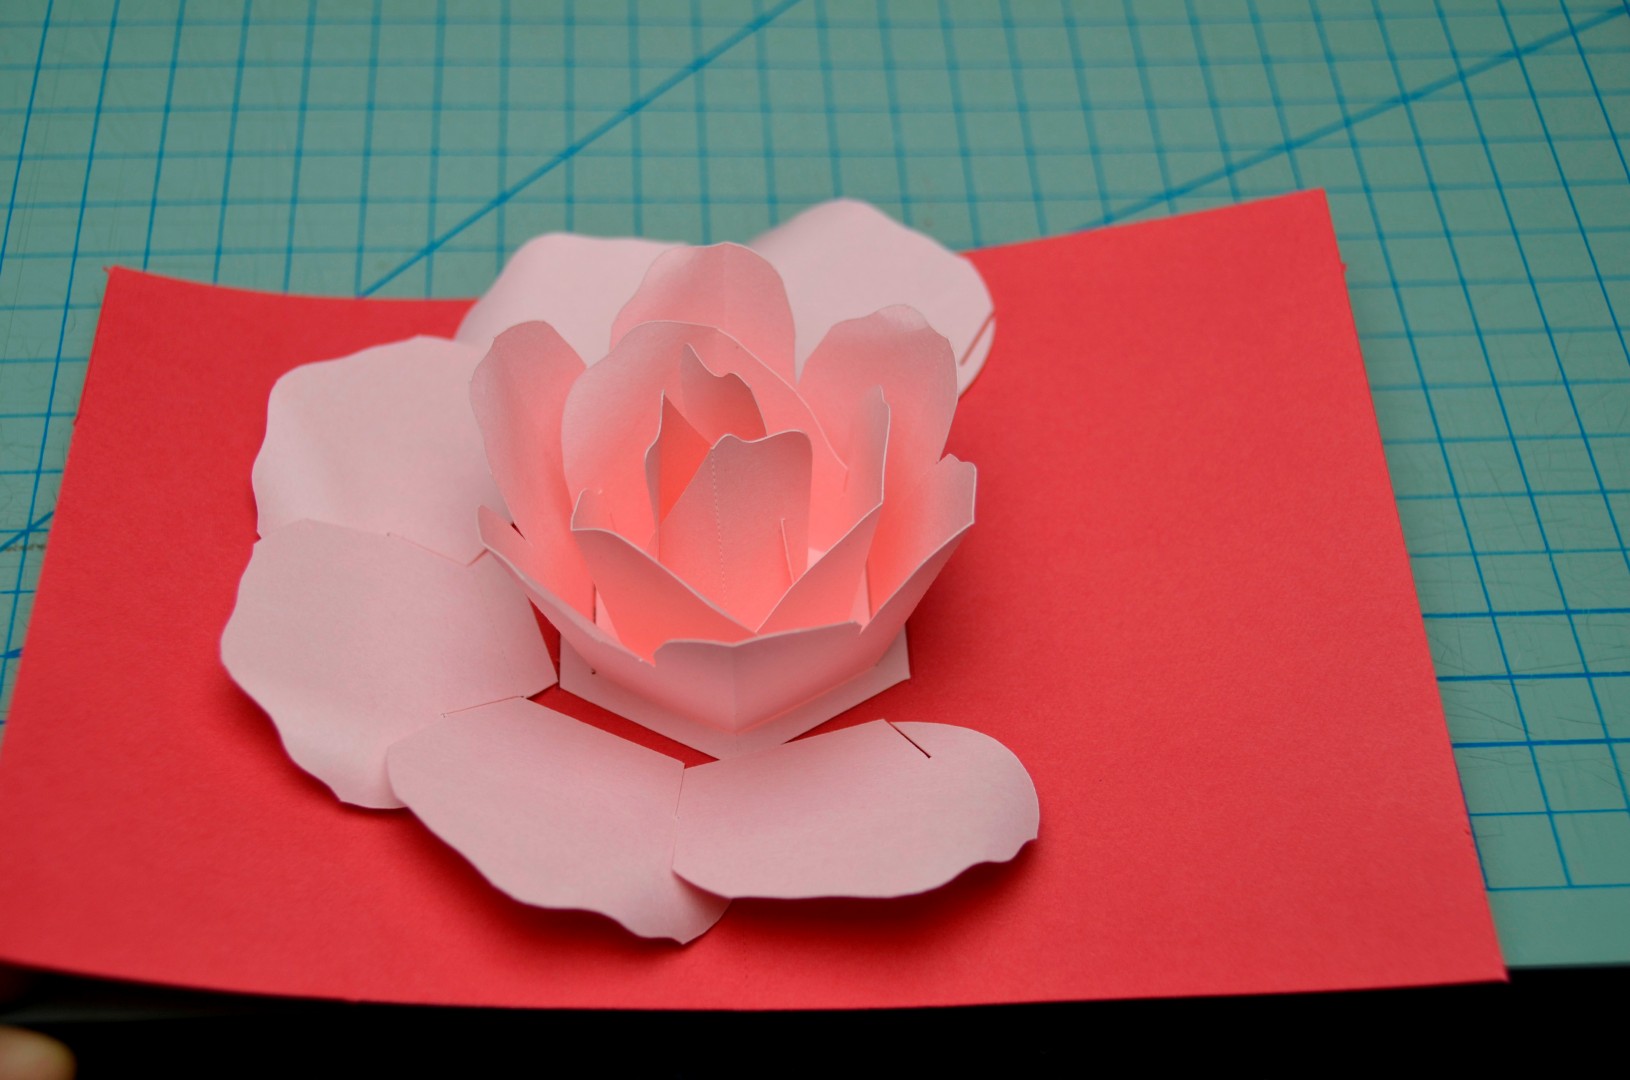 Rose Flower: Rose Flower Pop Up Card Template For Diy Pop Up Cards Templates